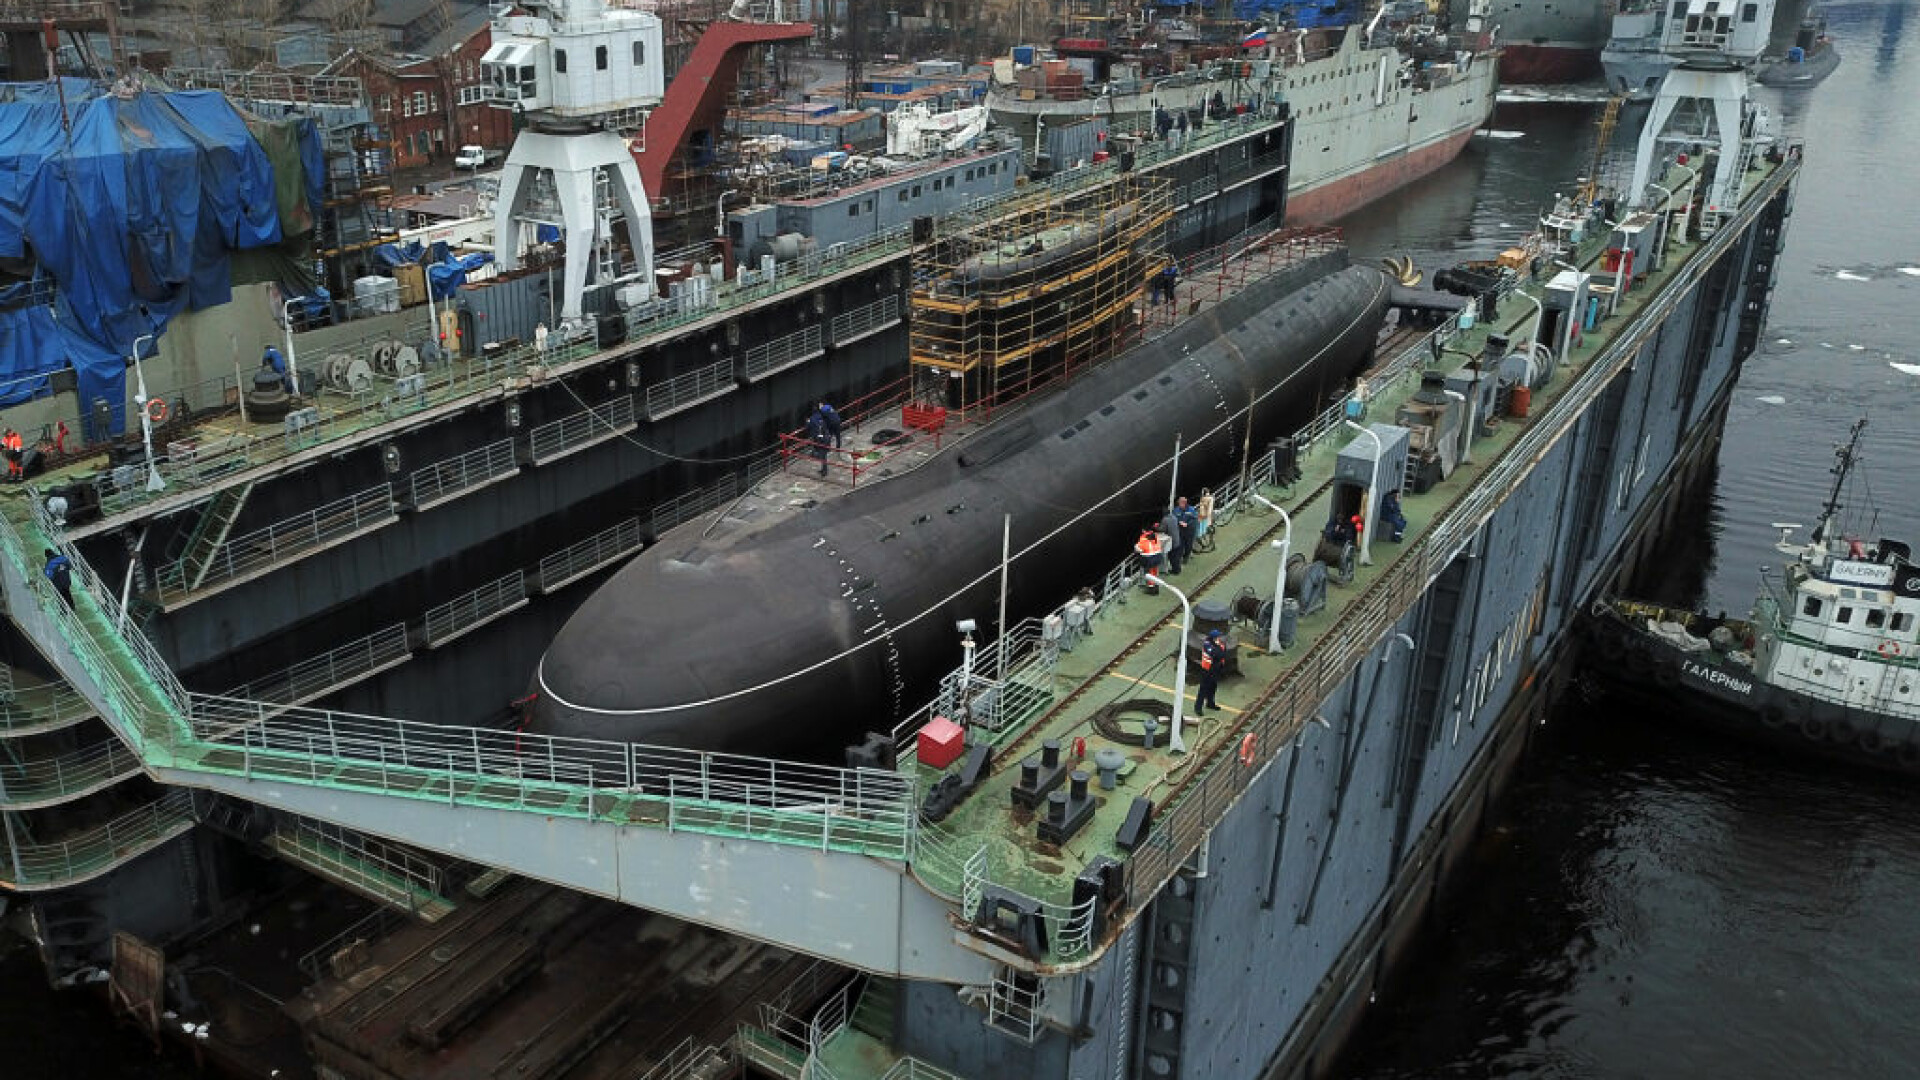 submarin rusia